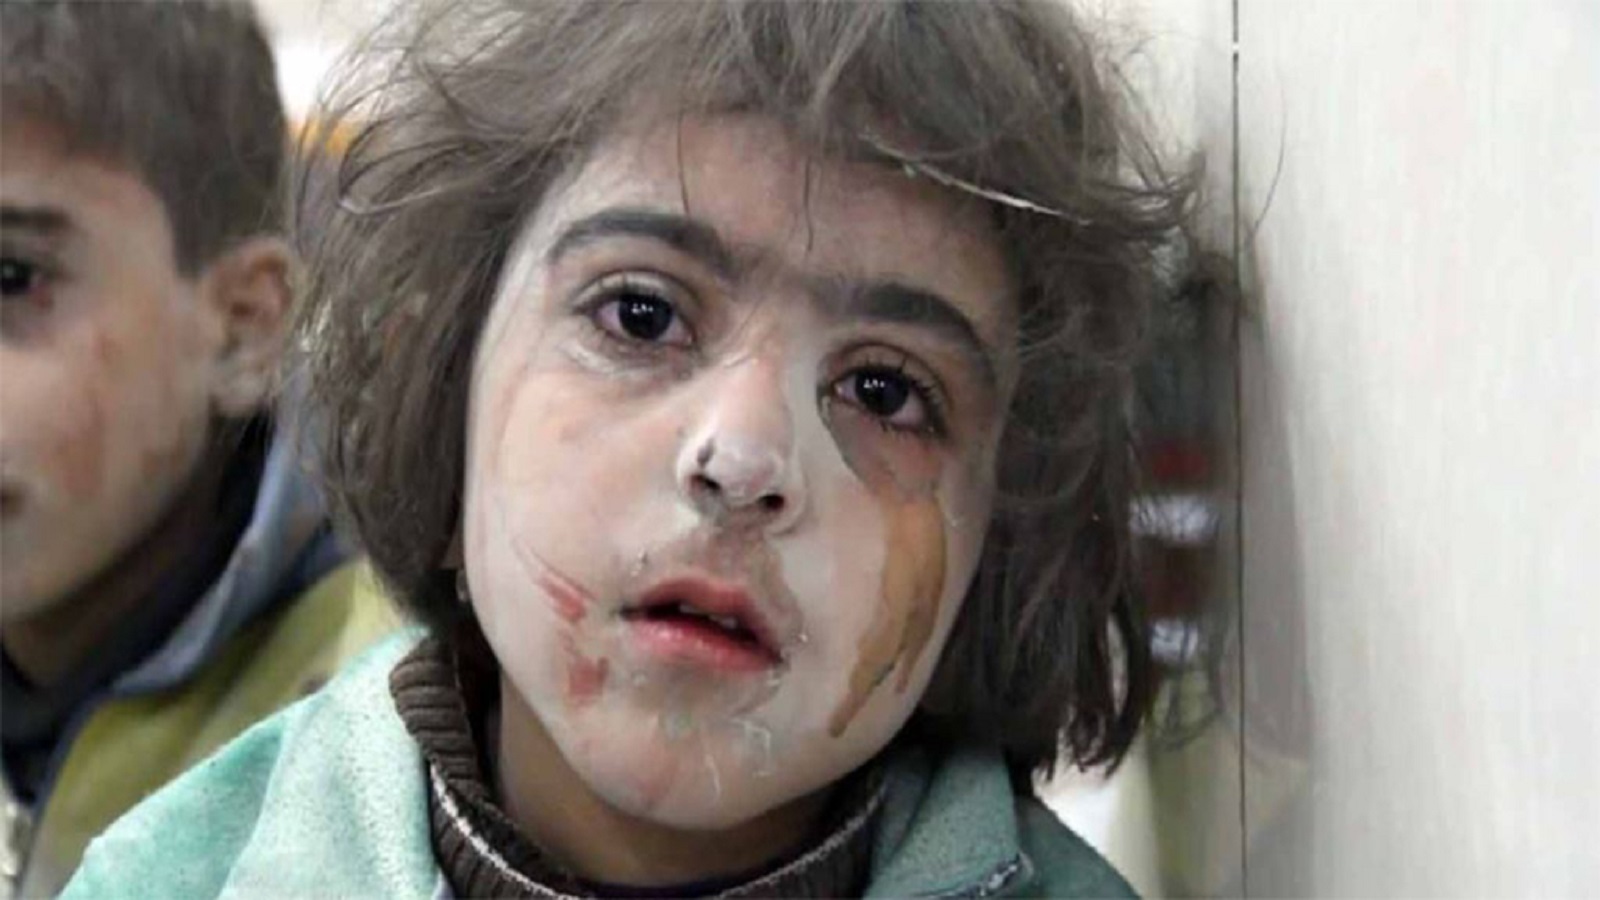 المصورة السورية وعد الخطيب تفوز بجائزة "روري بيك" البريطانية